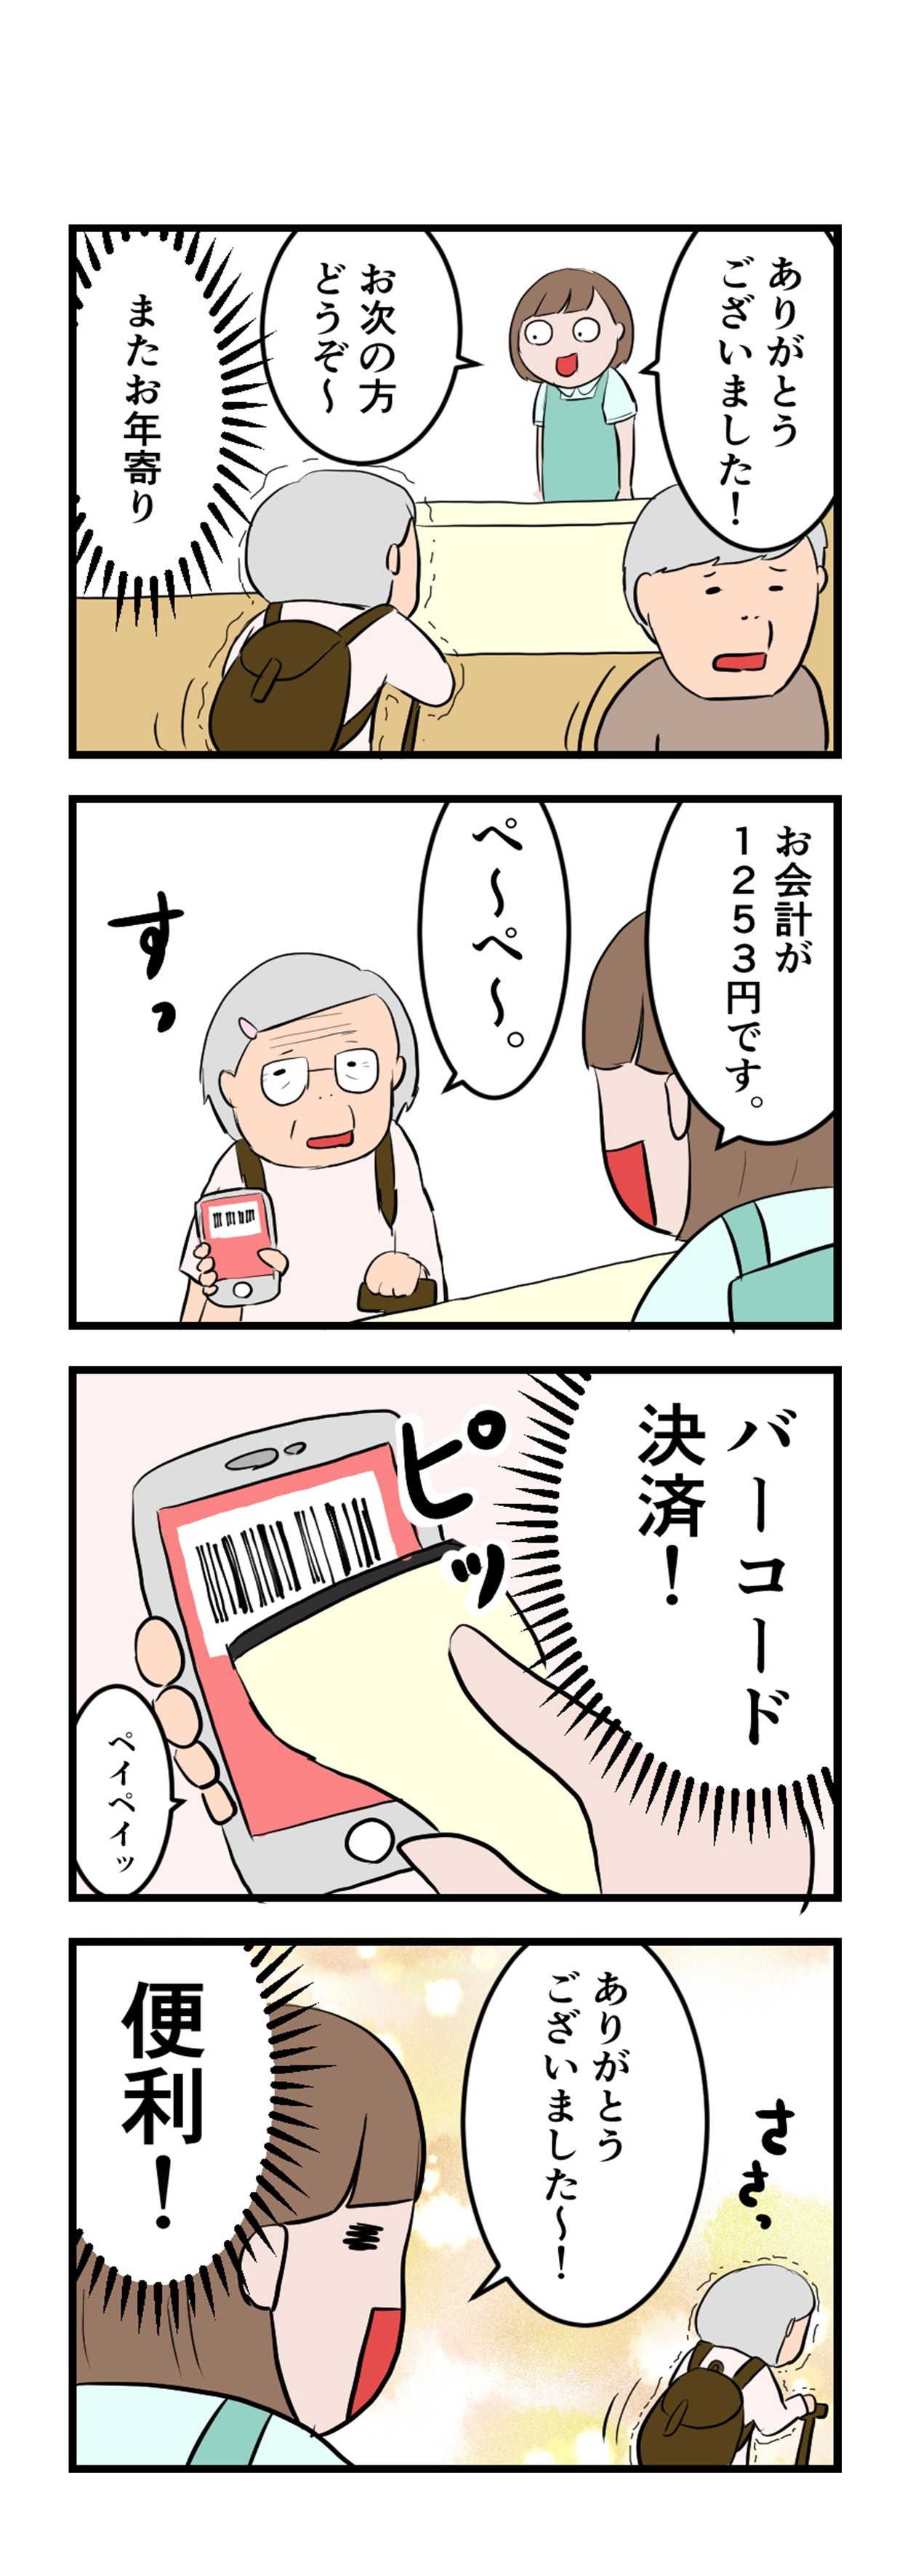 カイマル百貨店 O Ochigadaiji Twitter